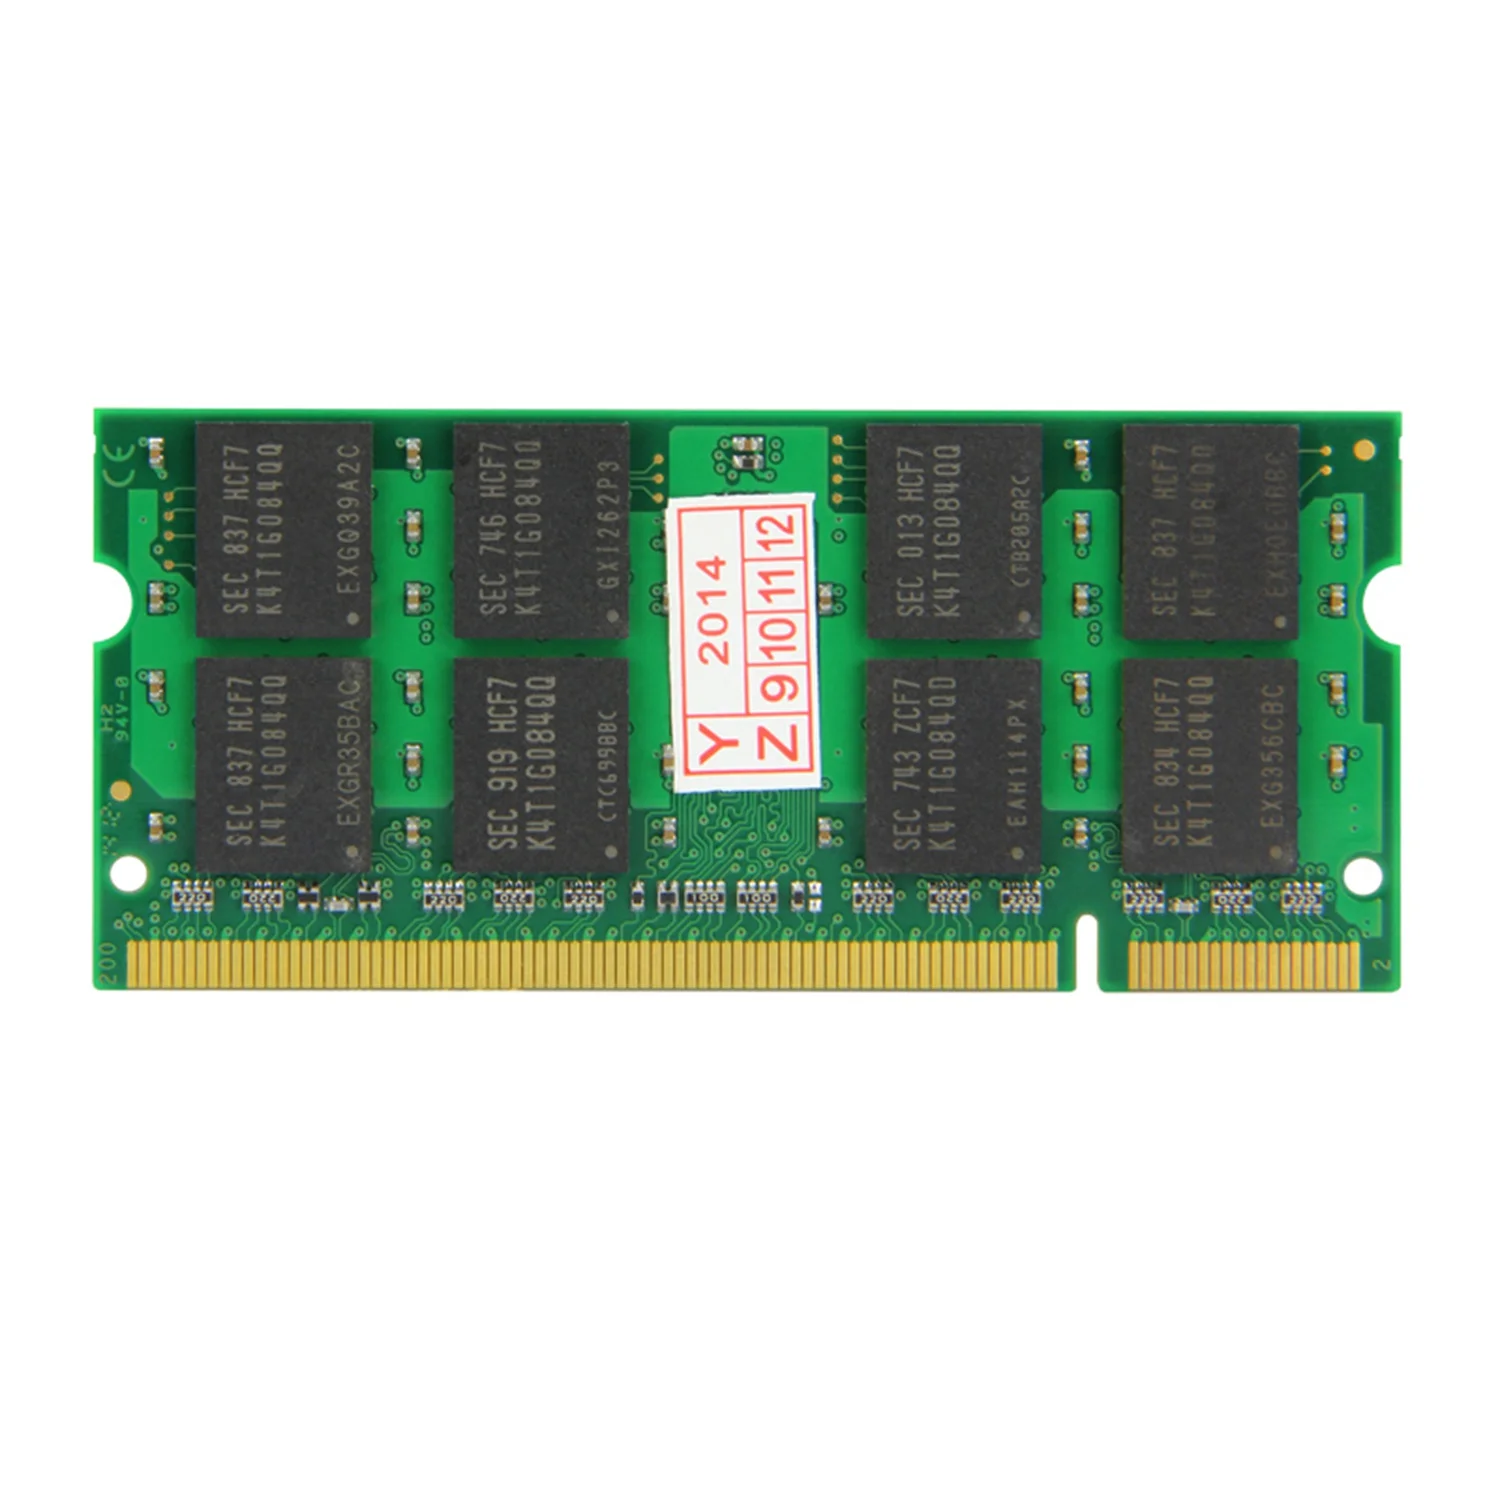 Xiede модуль оперативной памяти ноутбука Ddr2 533 Pc2-4200 240Pin Dimm 533 МГц для ноутбука X029